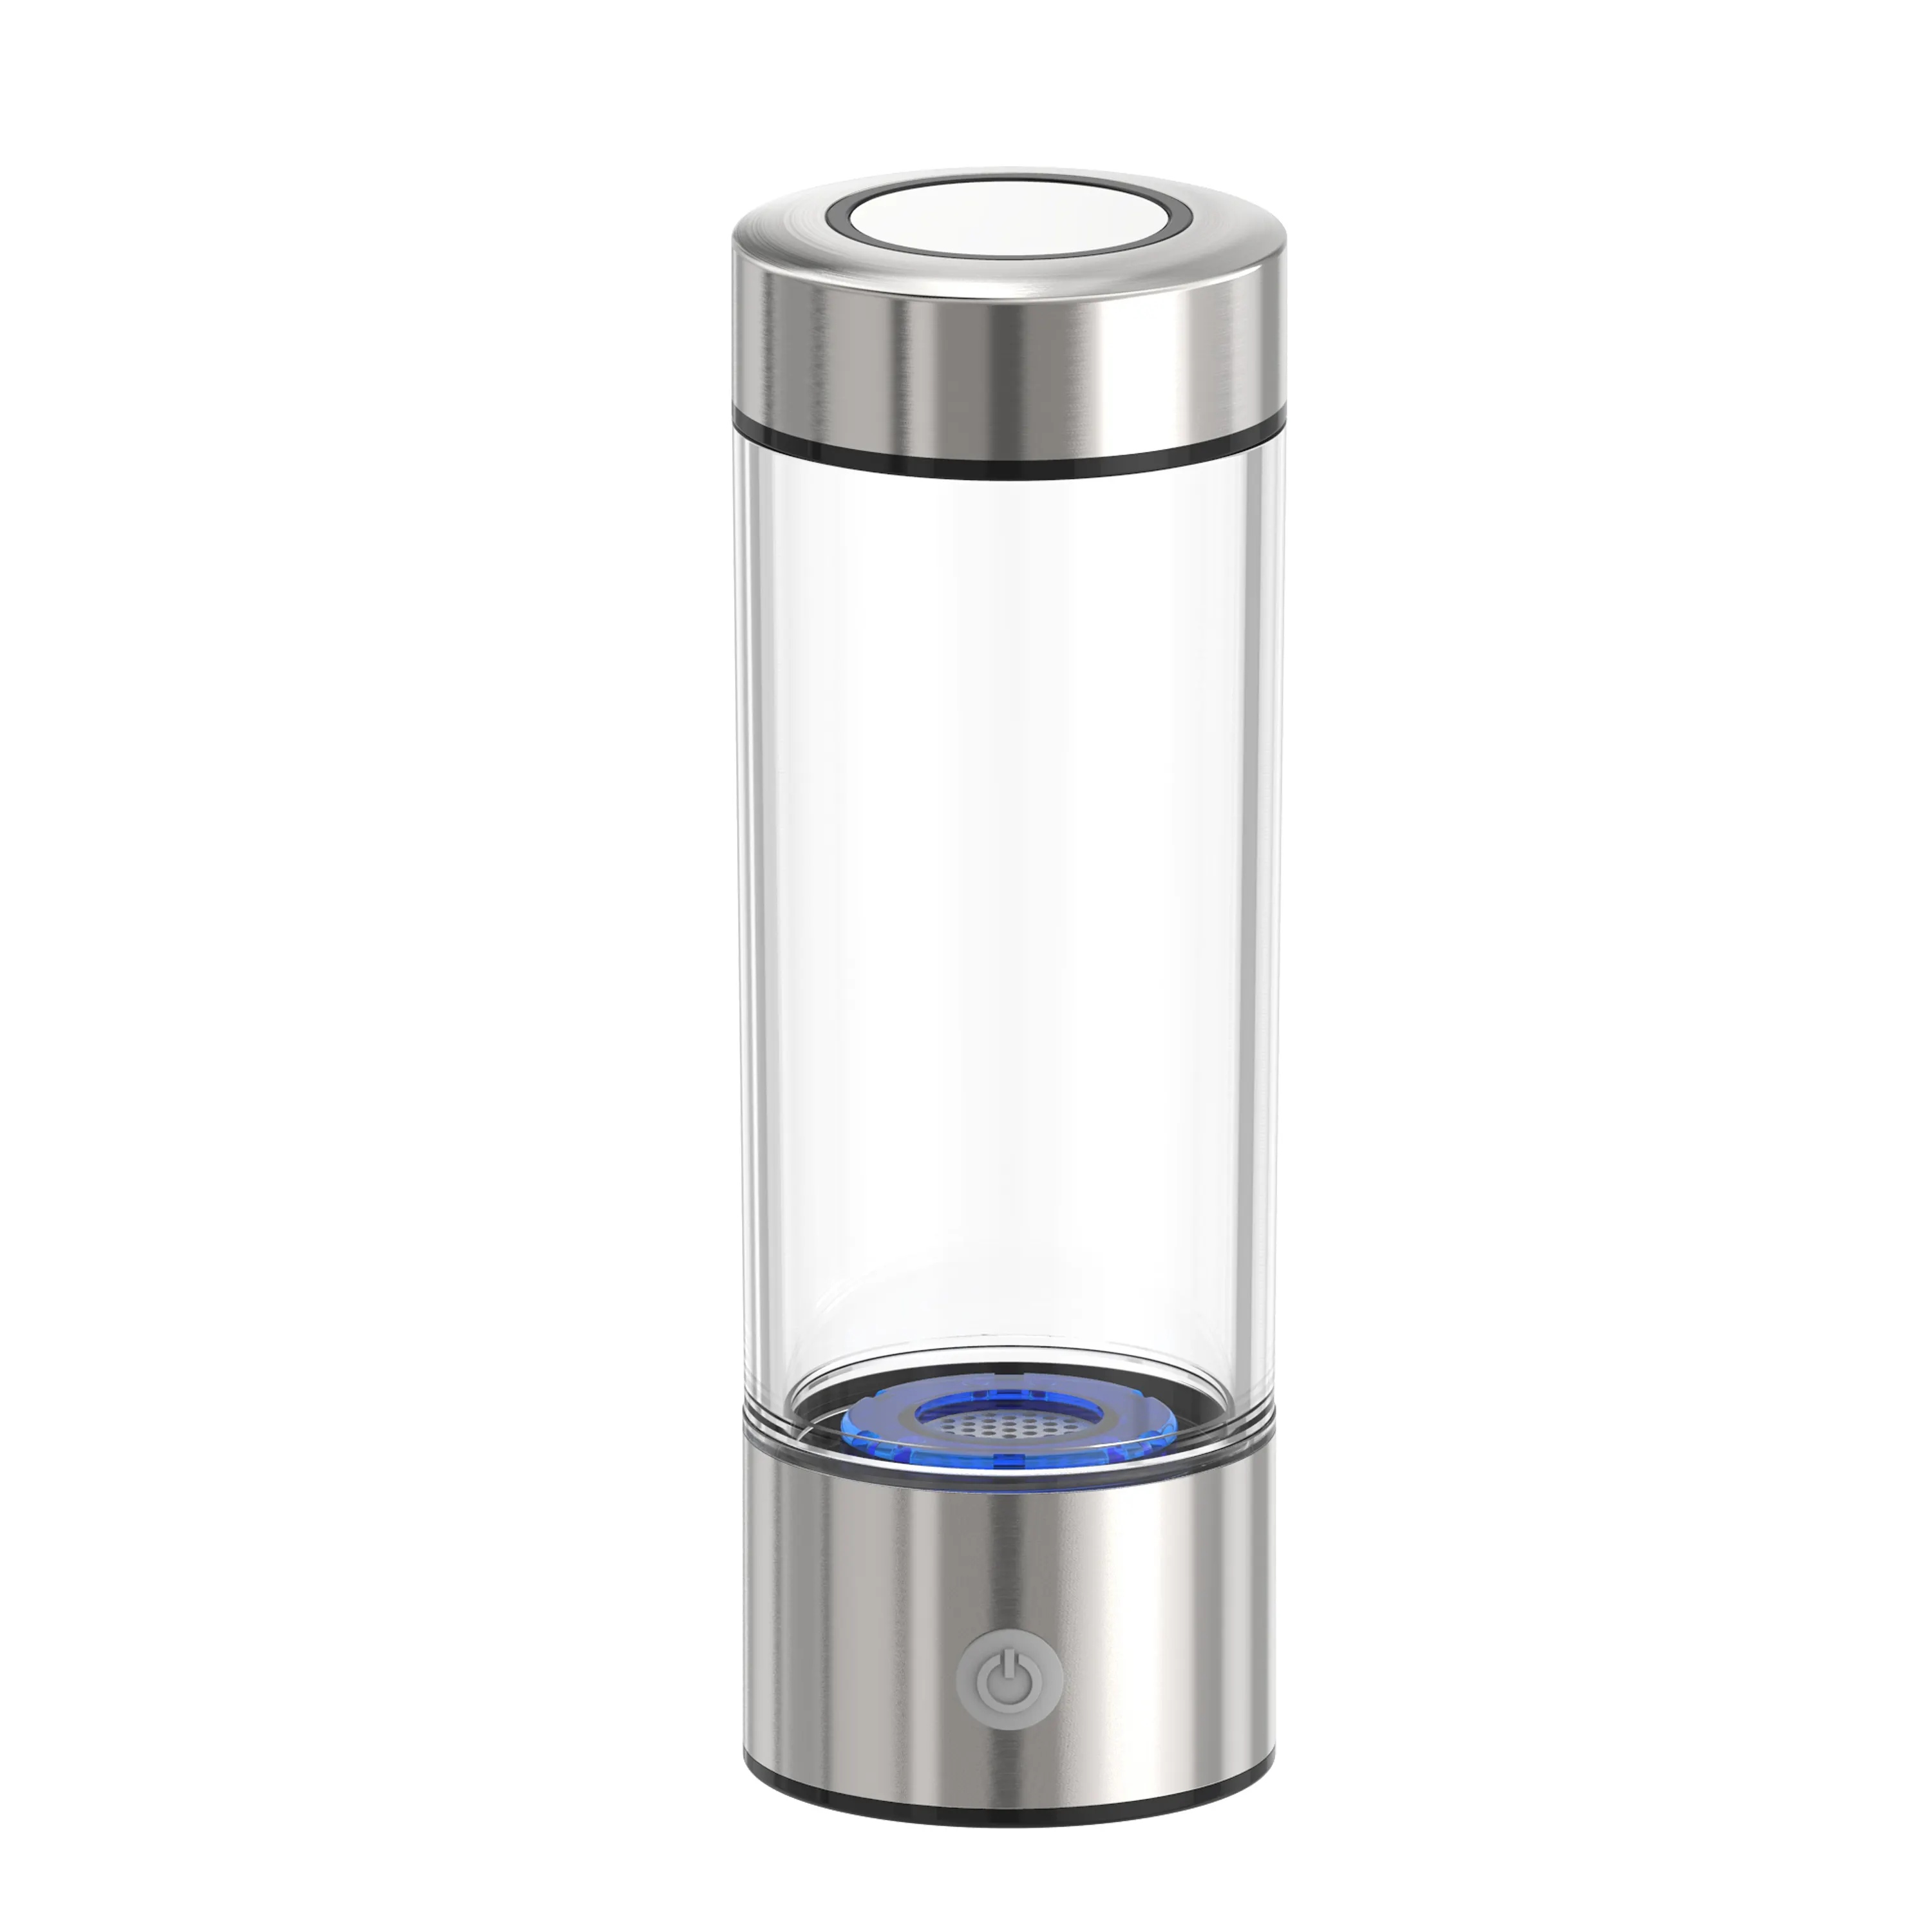 Promosi terlaris botol air hidrogen cangkir gelas gelas Pitcher botol air alkali mesin botol air H2 sehat rumah